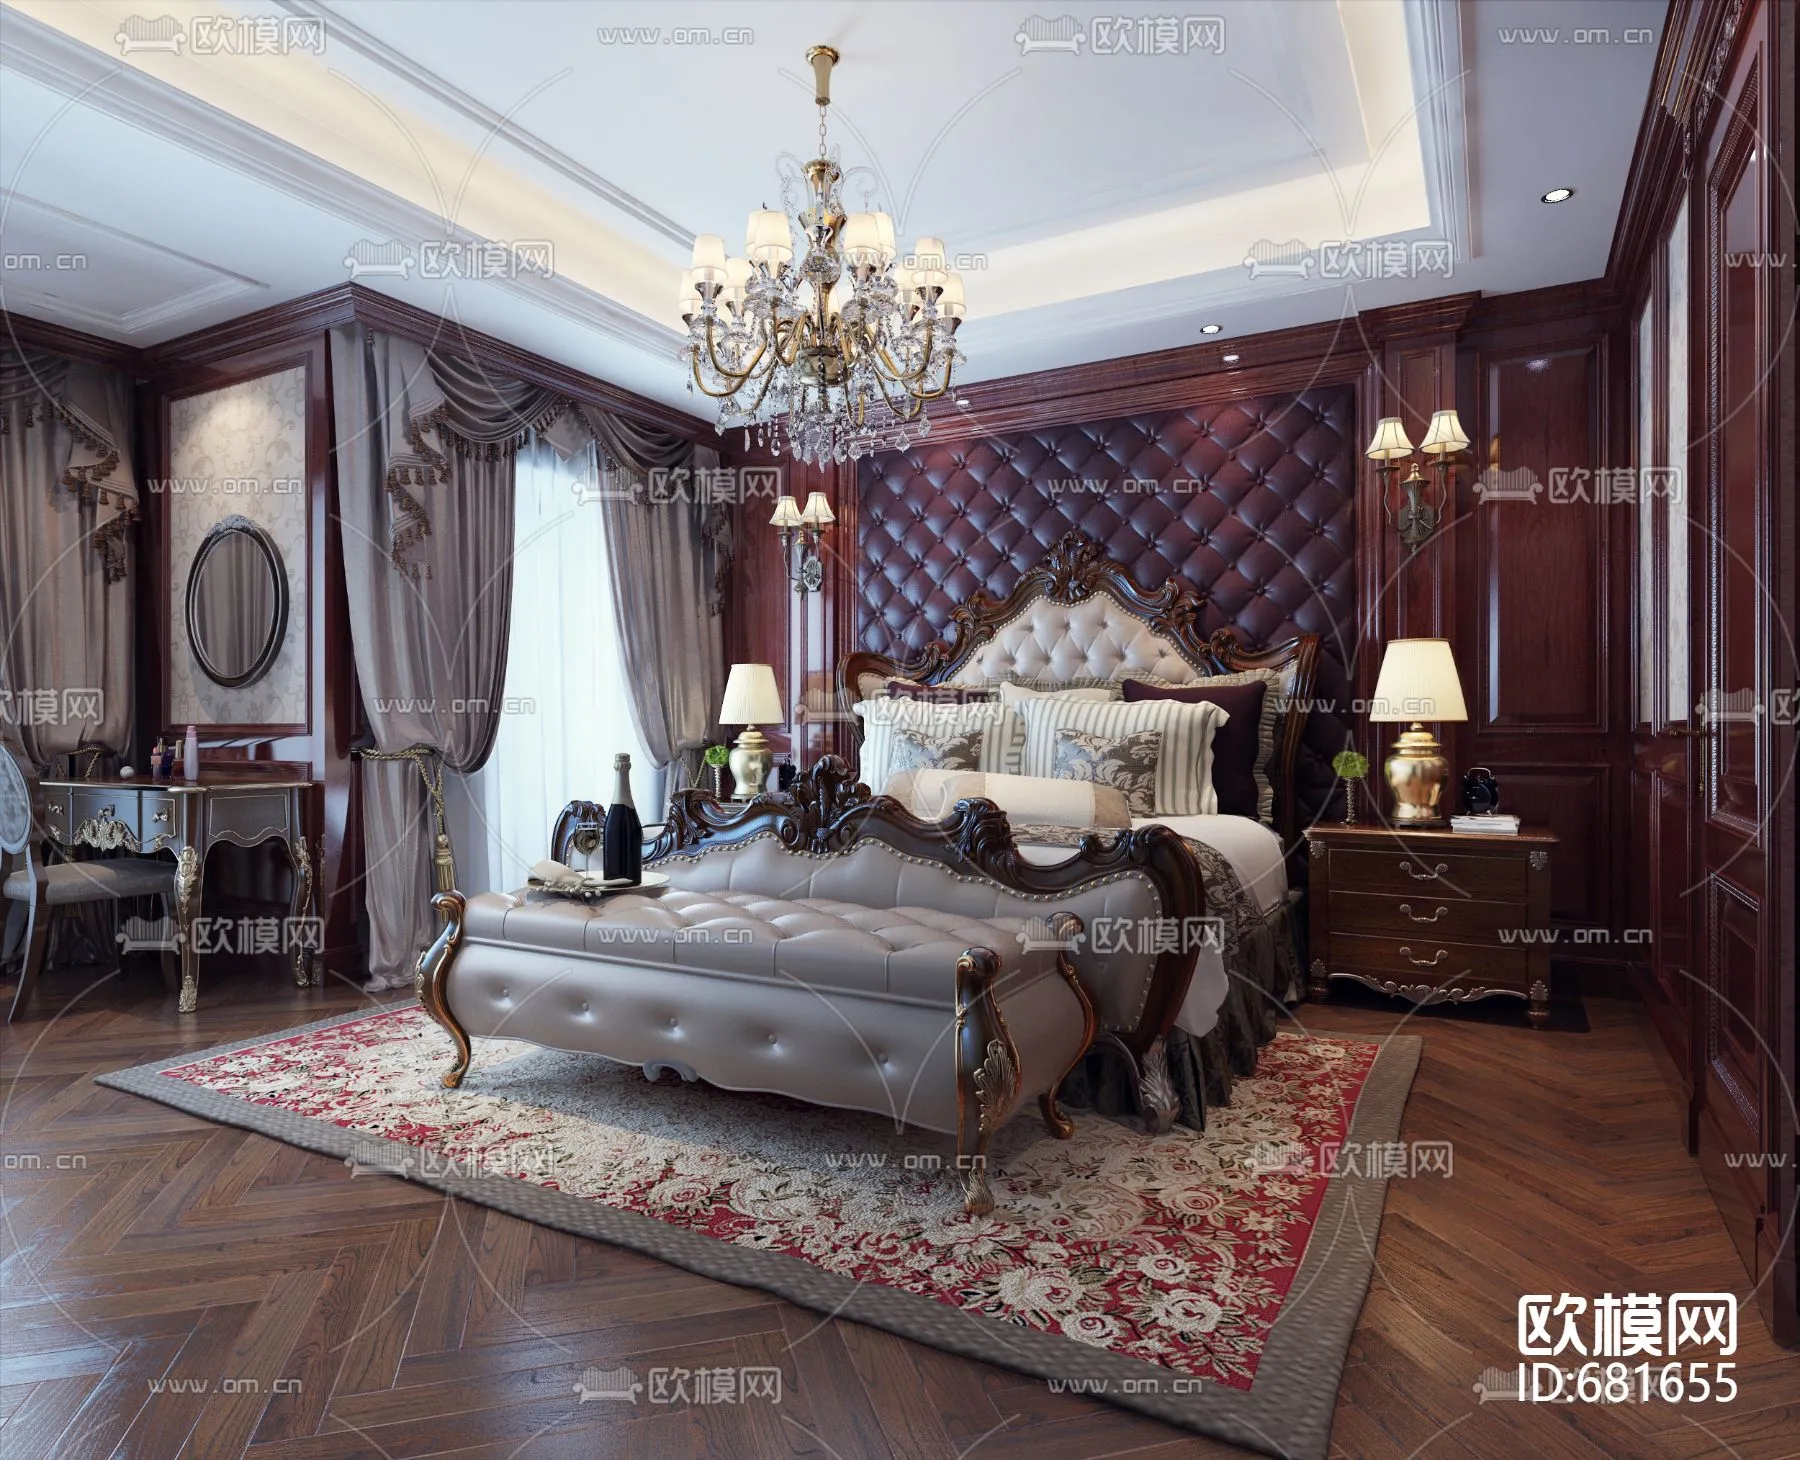 Bedroom 3D Scenes – European – 0158